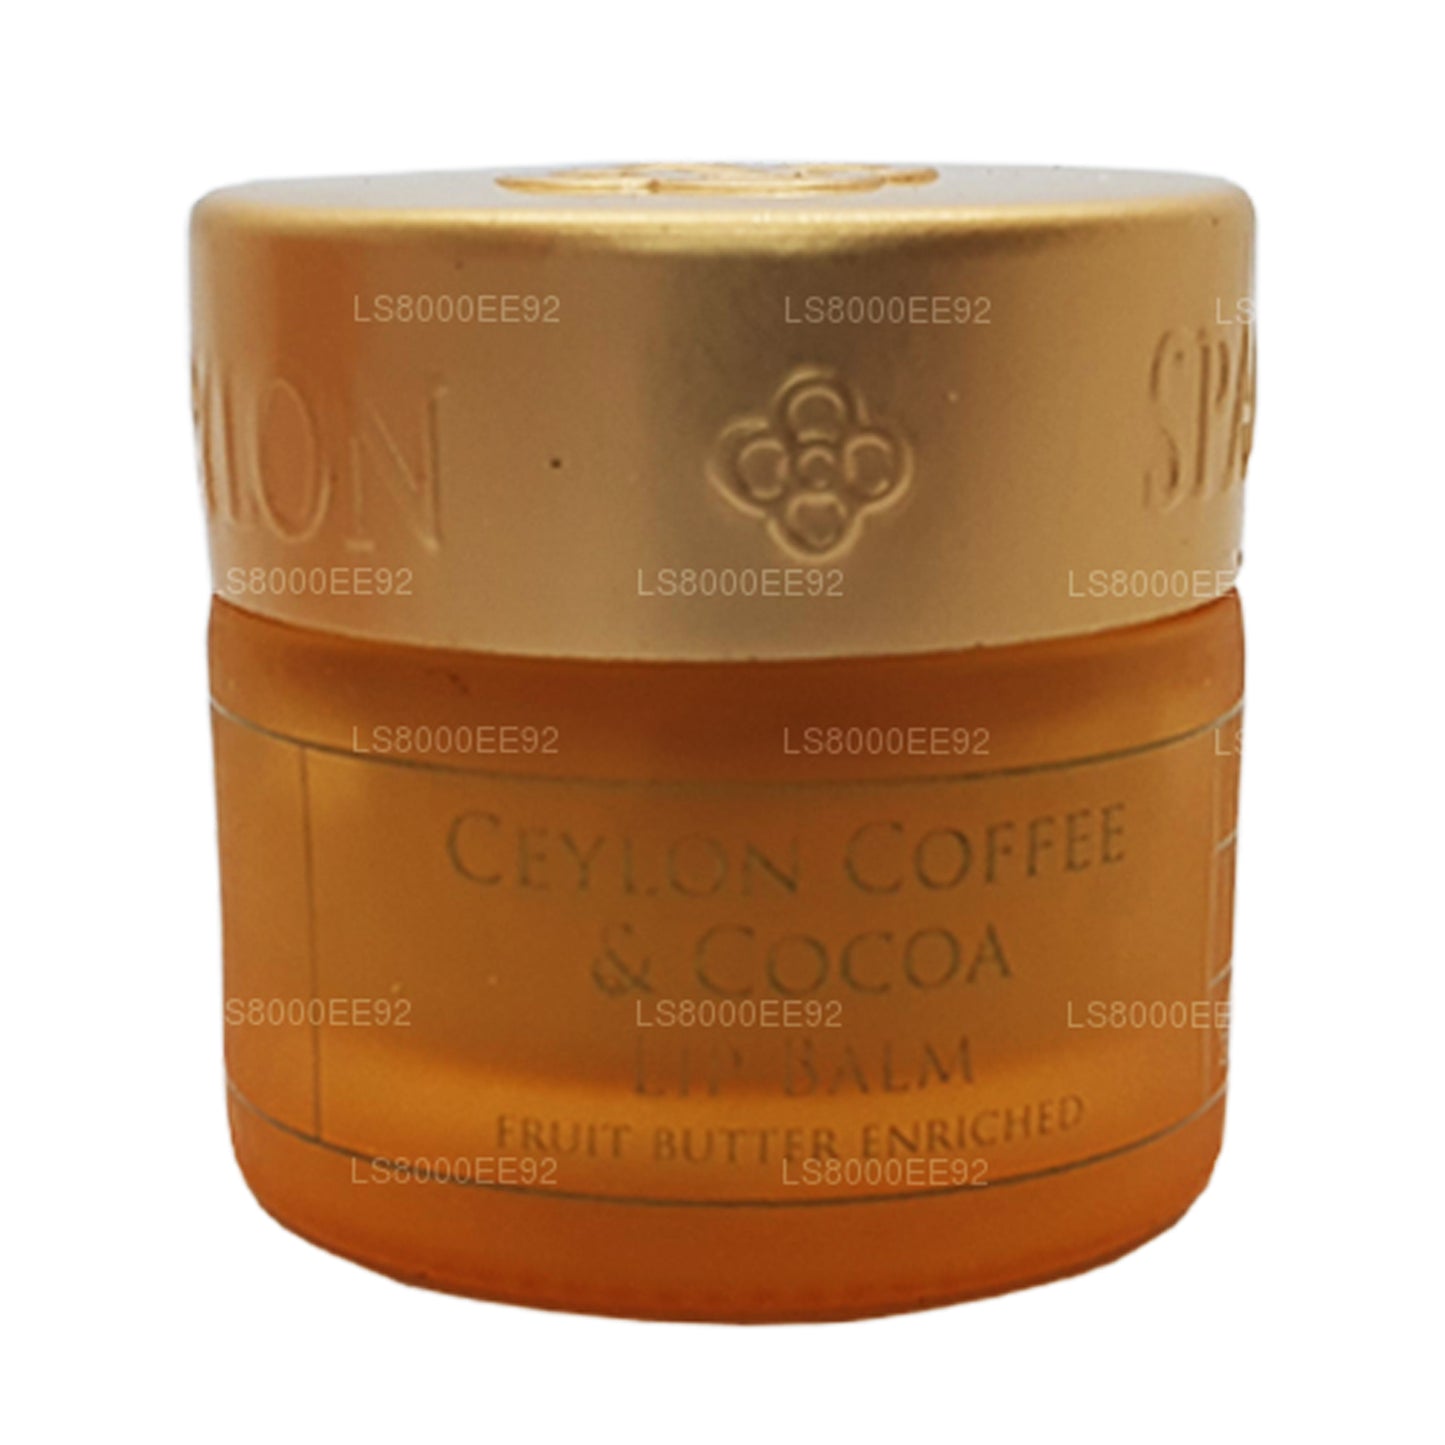 Spa Ceylon Ceylon Coffee and Cocoa Lip Balm (10g)